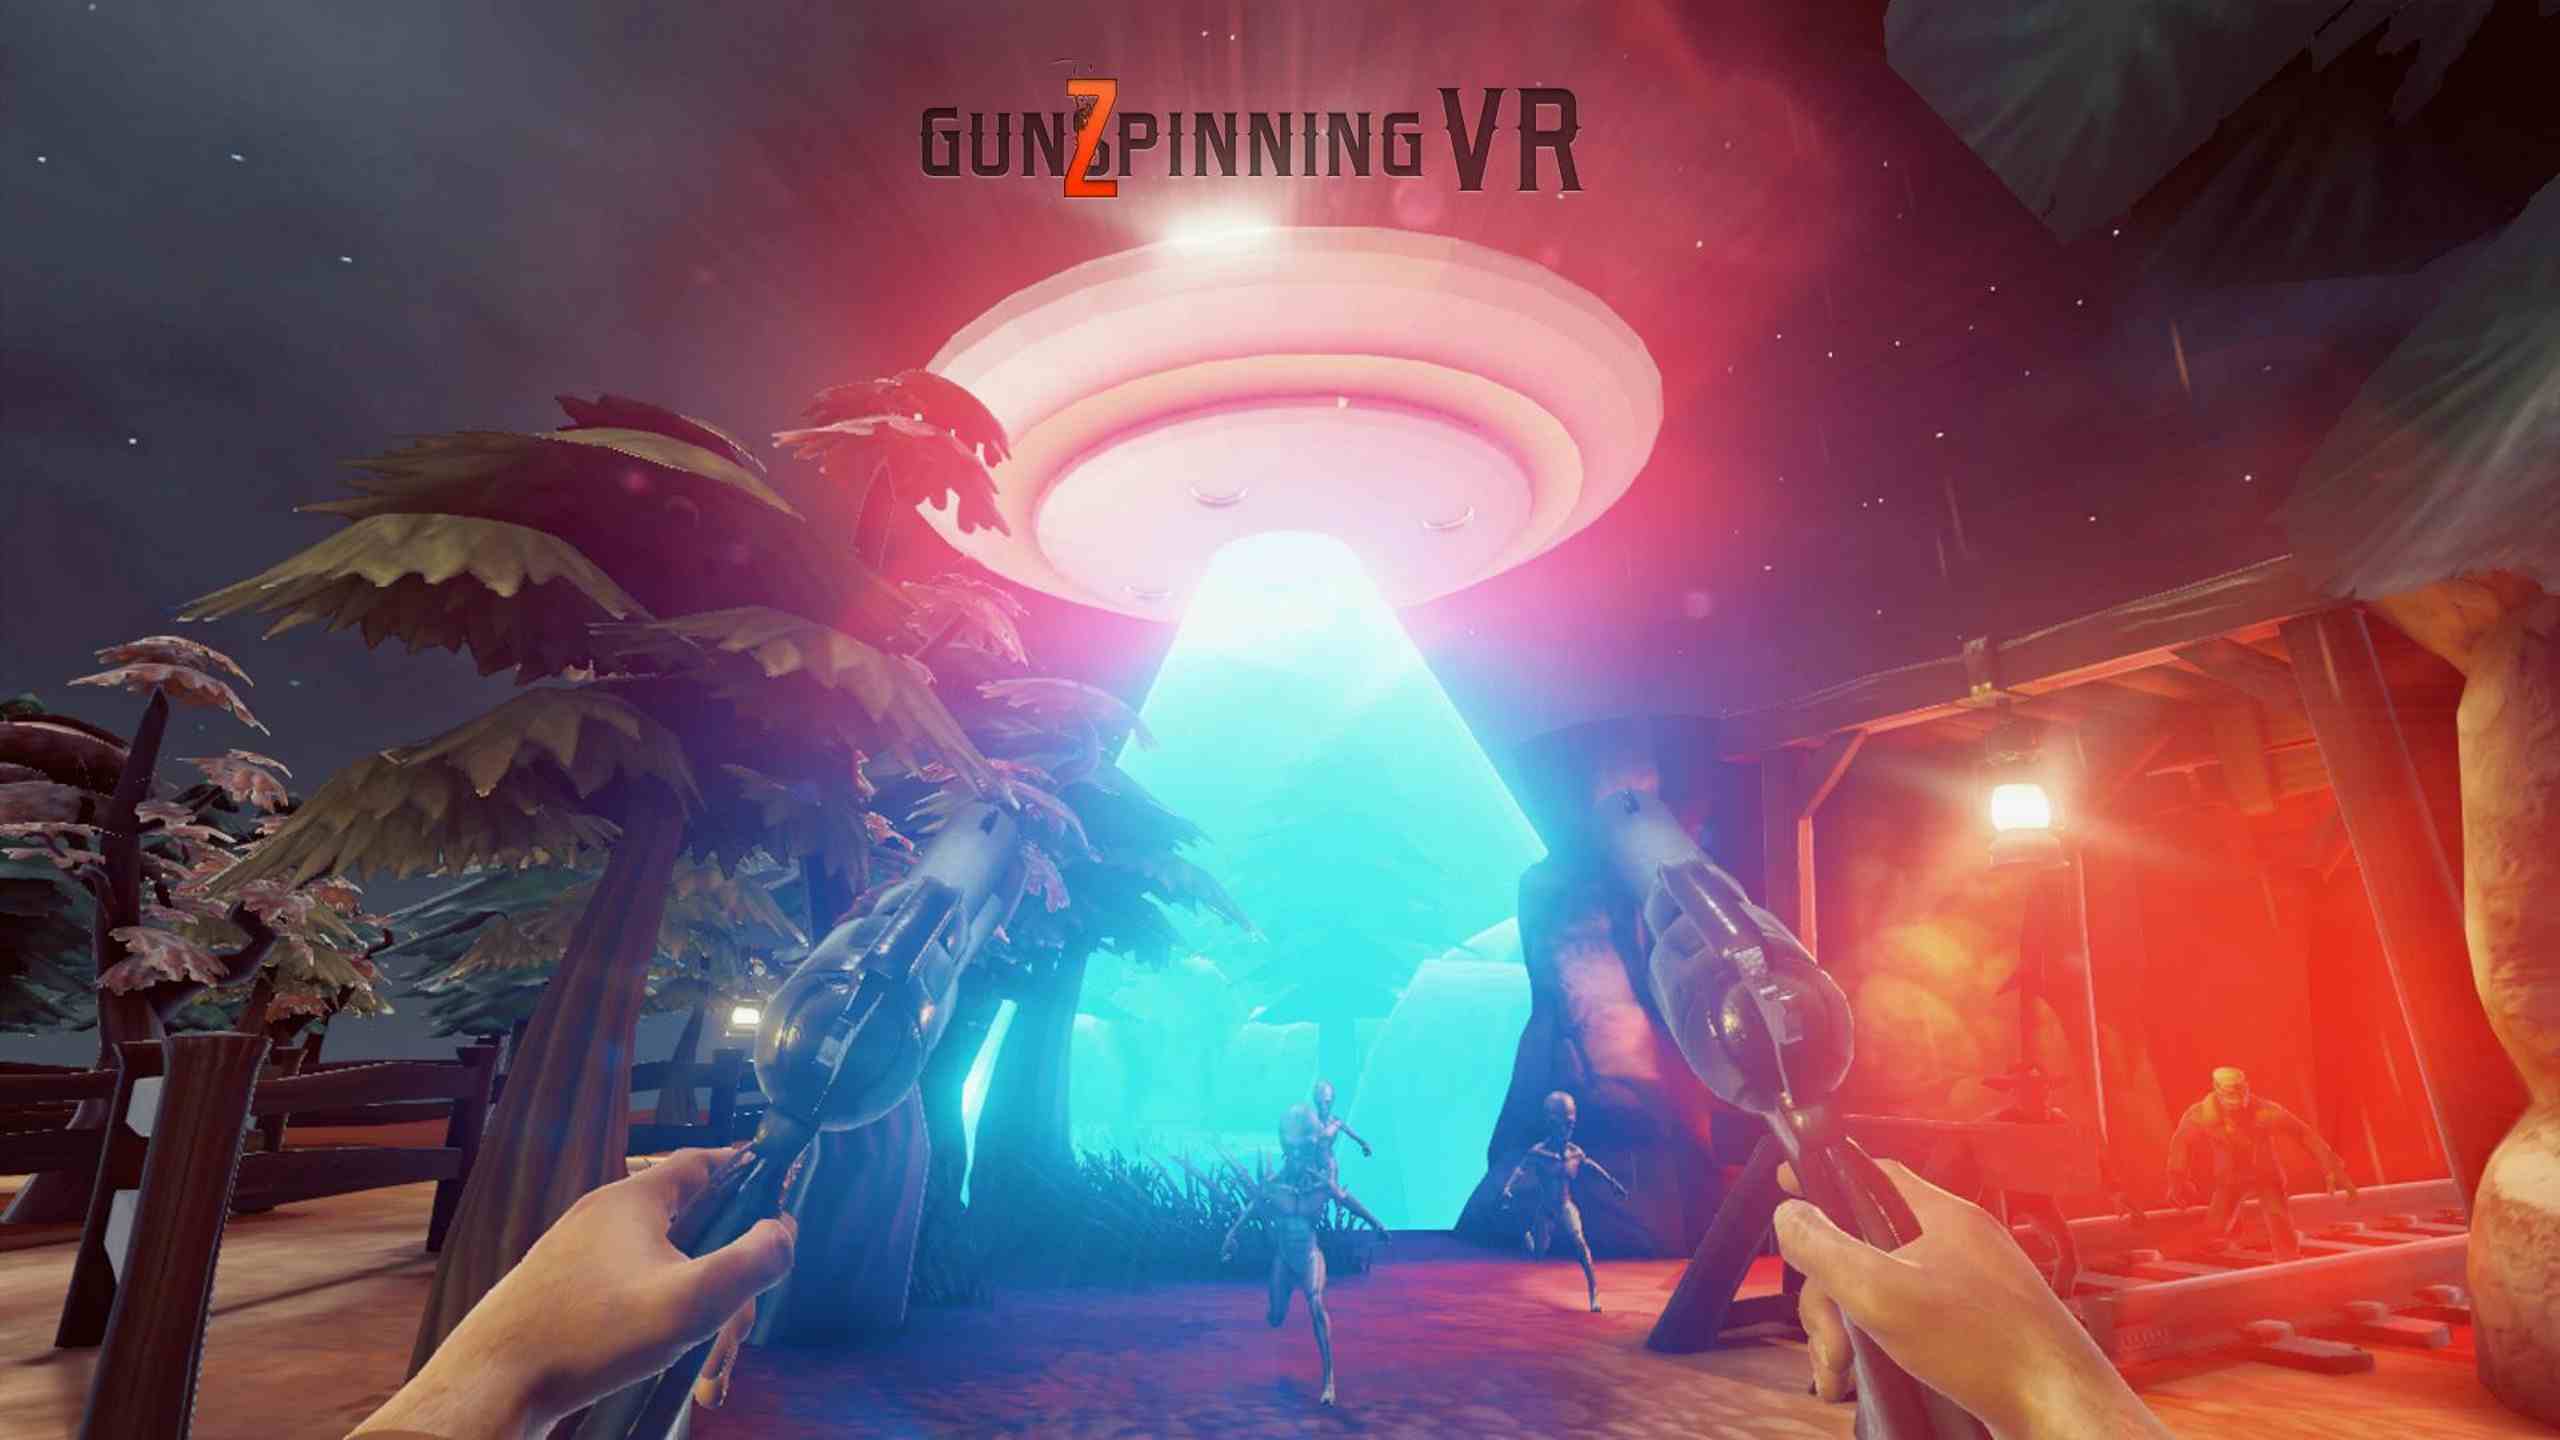 Oculus Quest 游戏《旋转的左轮》GunSpinning VR